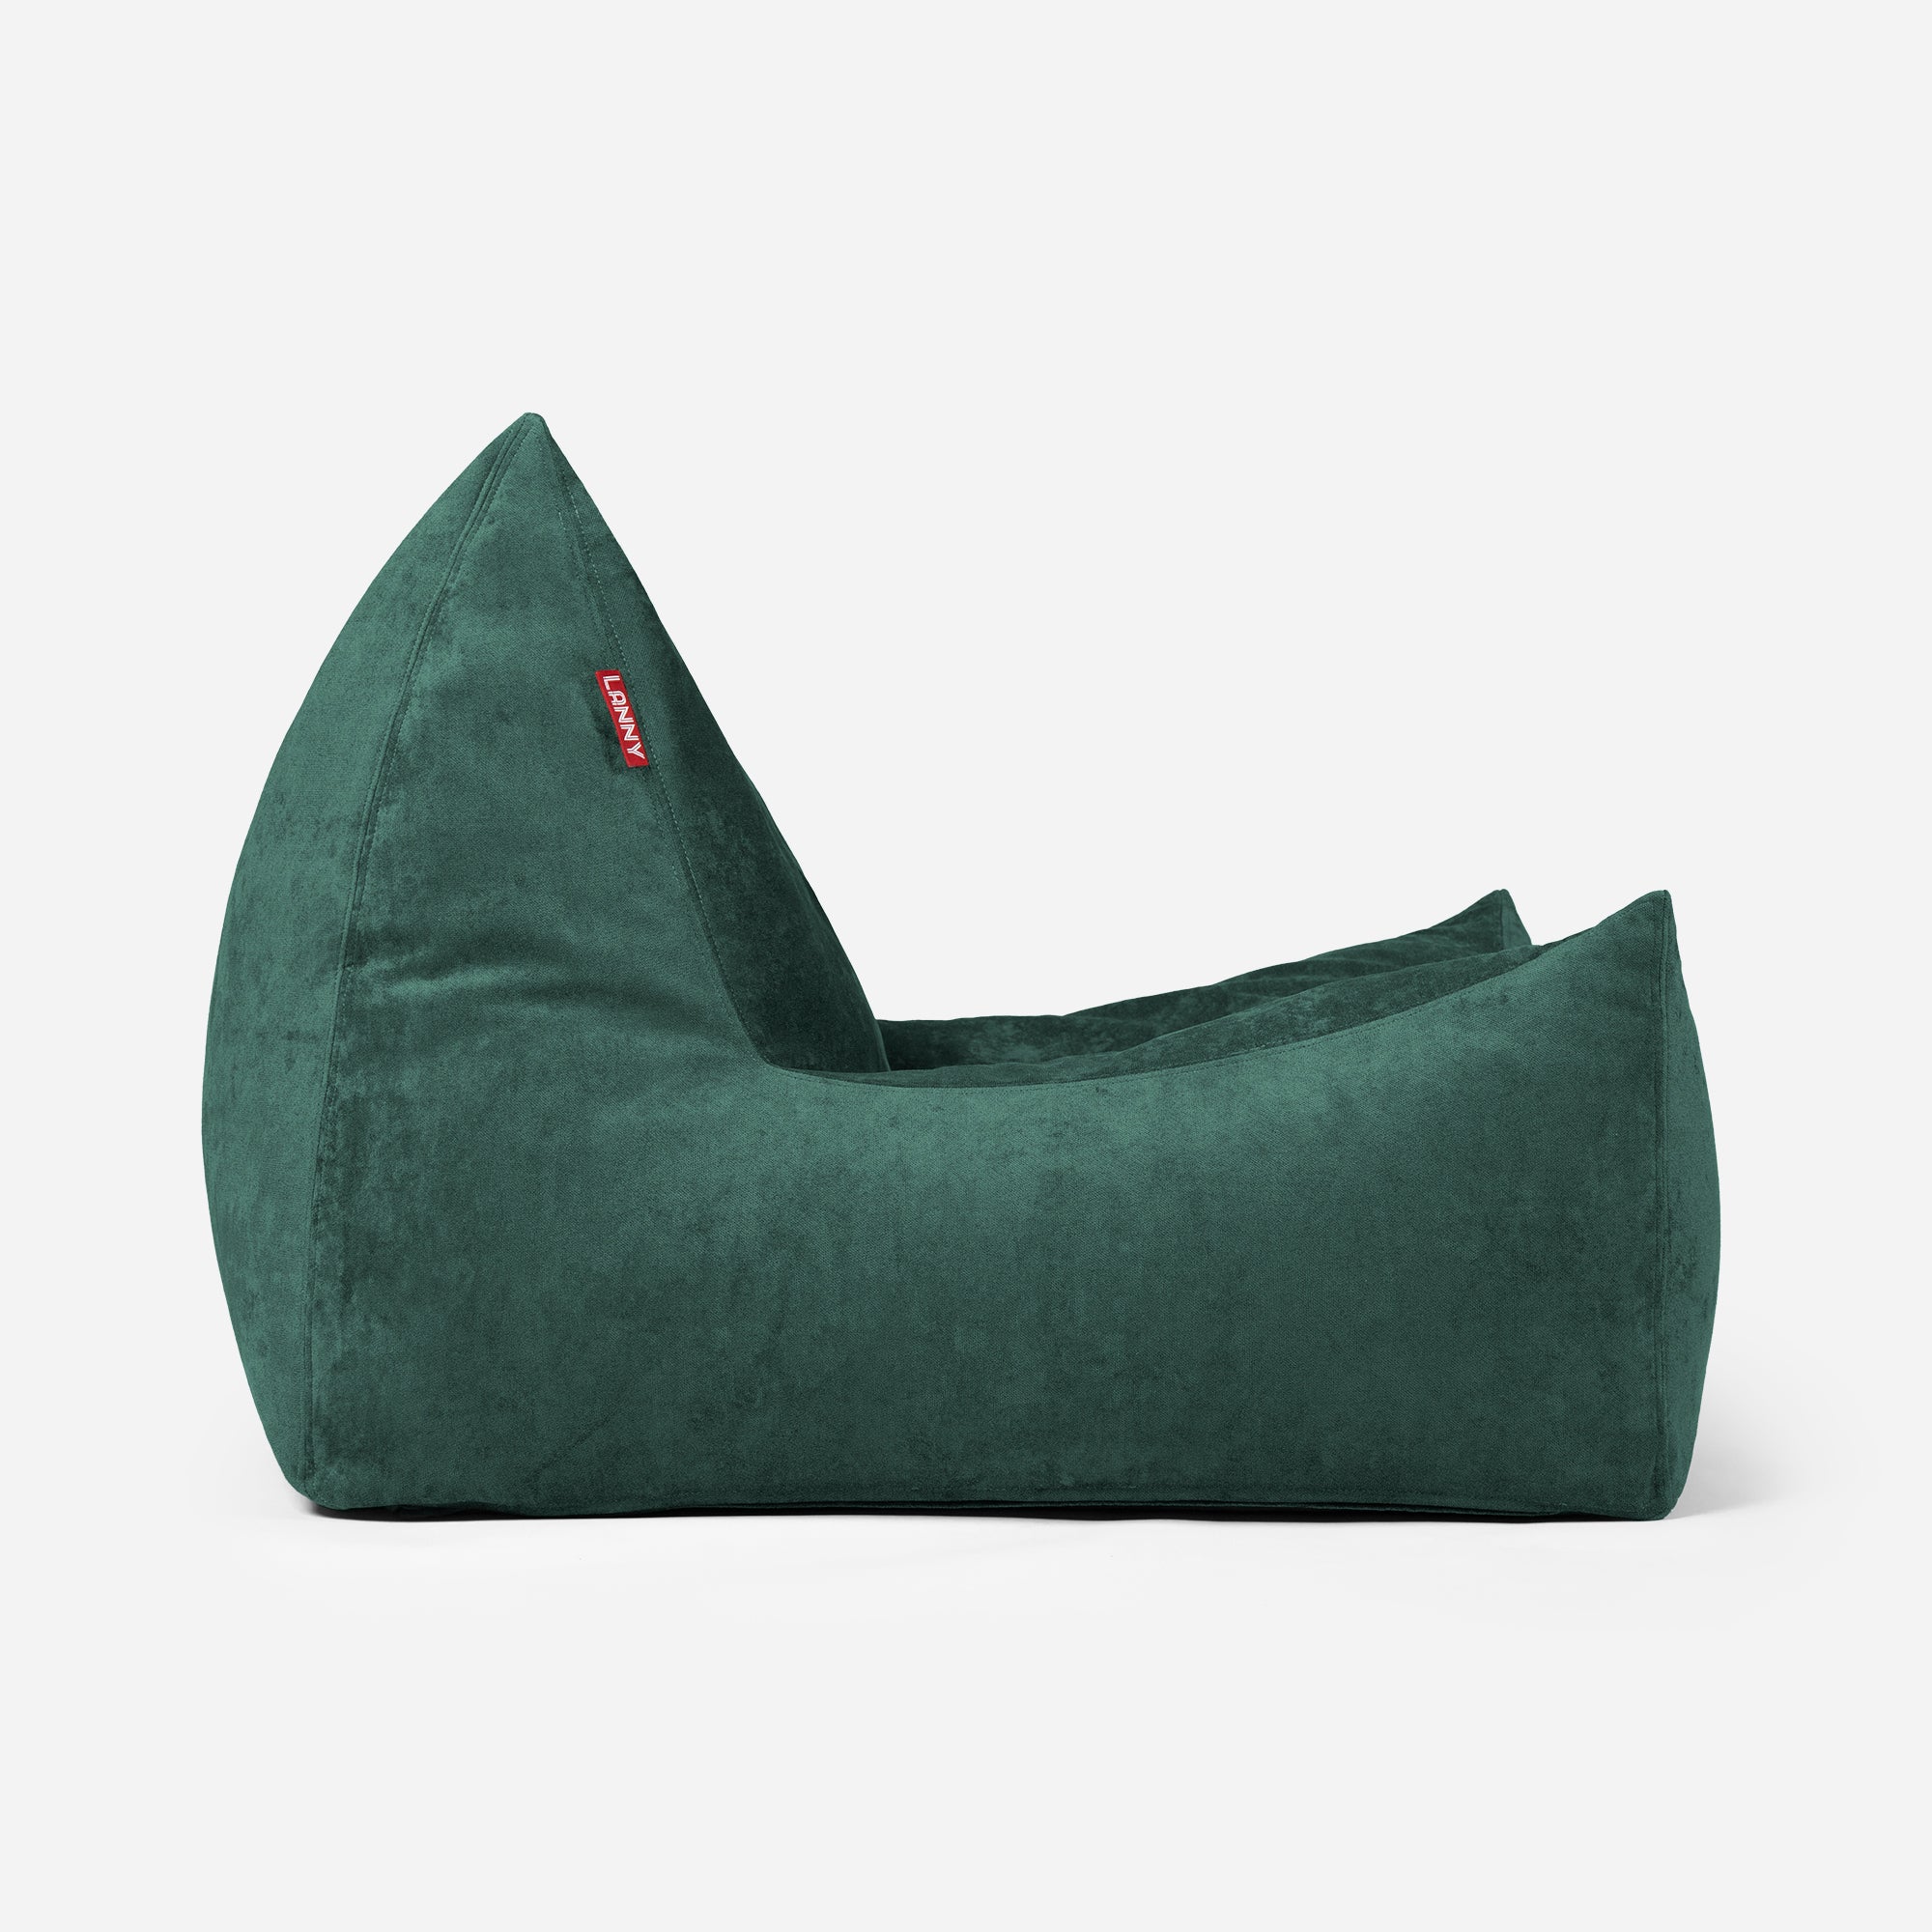 Quadro Aldo Green Bean bag Chair